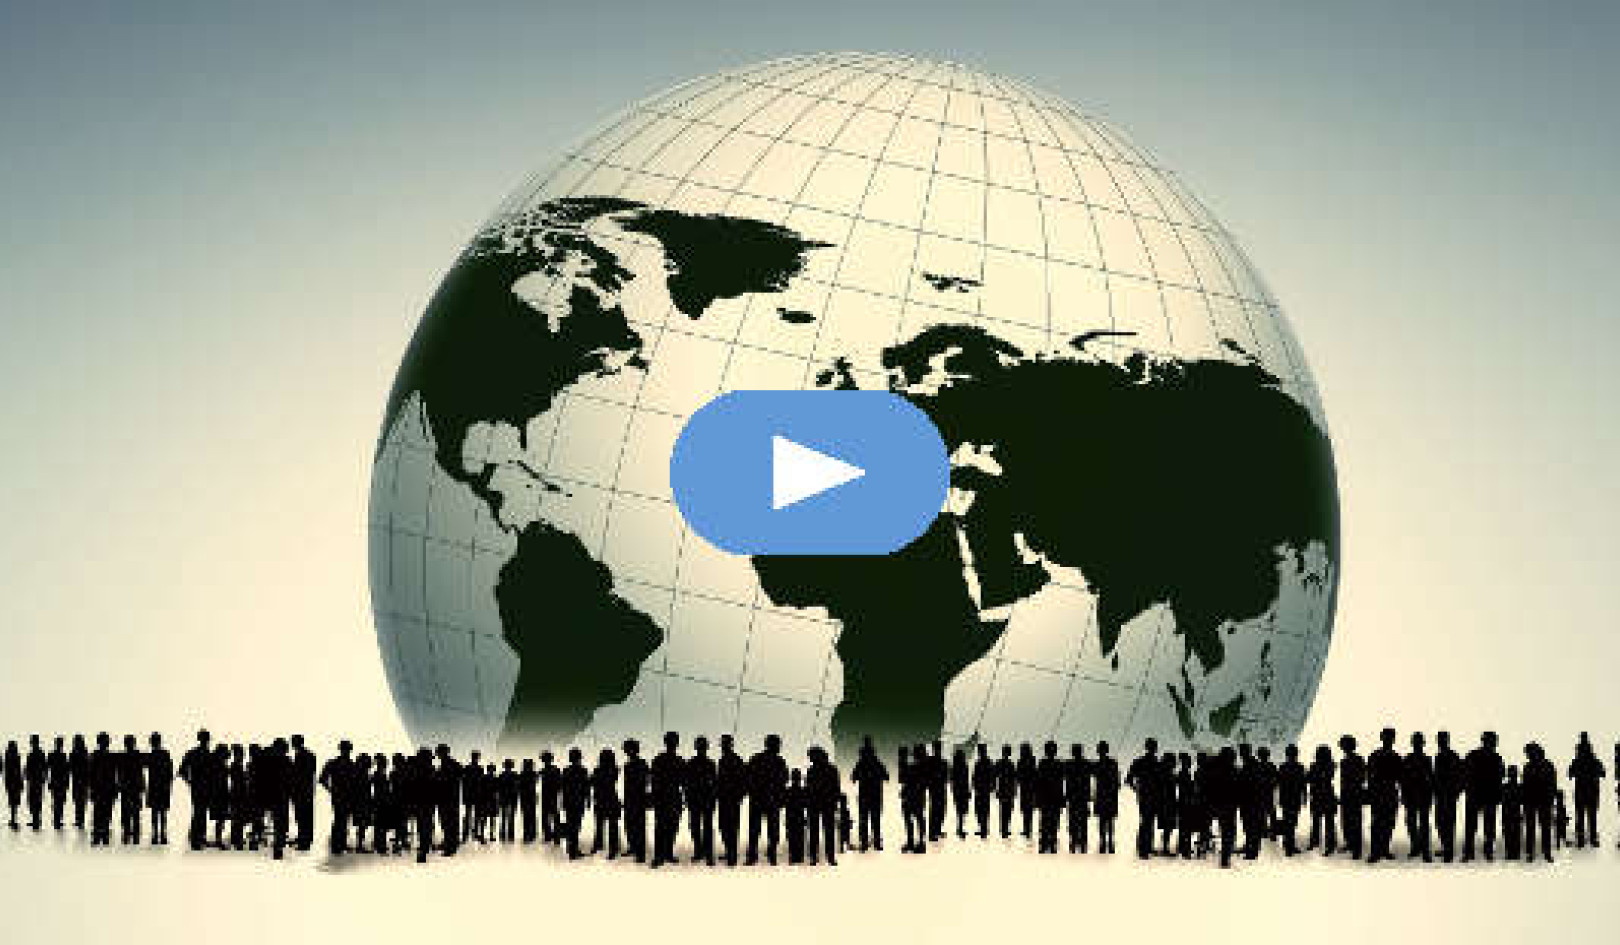 Как отказаться от нарративов о войне и сделать коллективное благополучие приоритетом (видео)